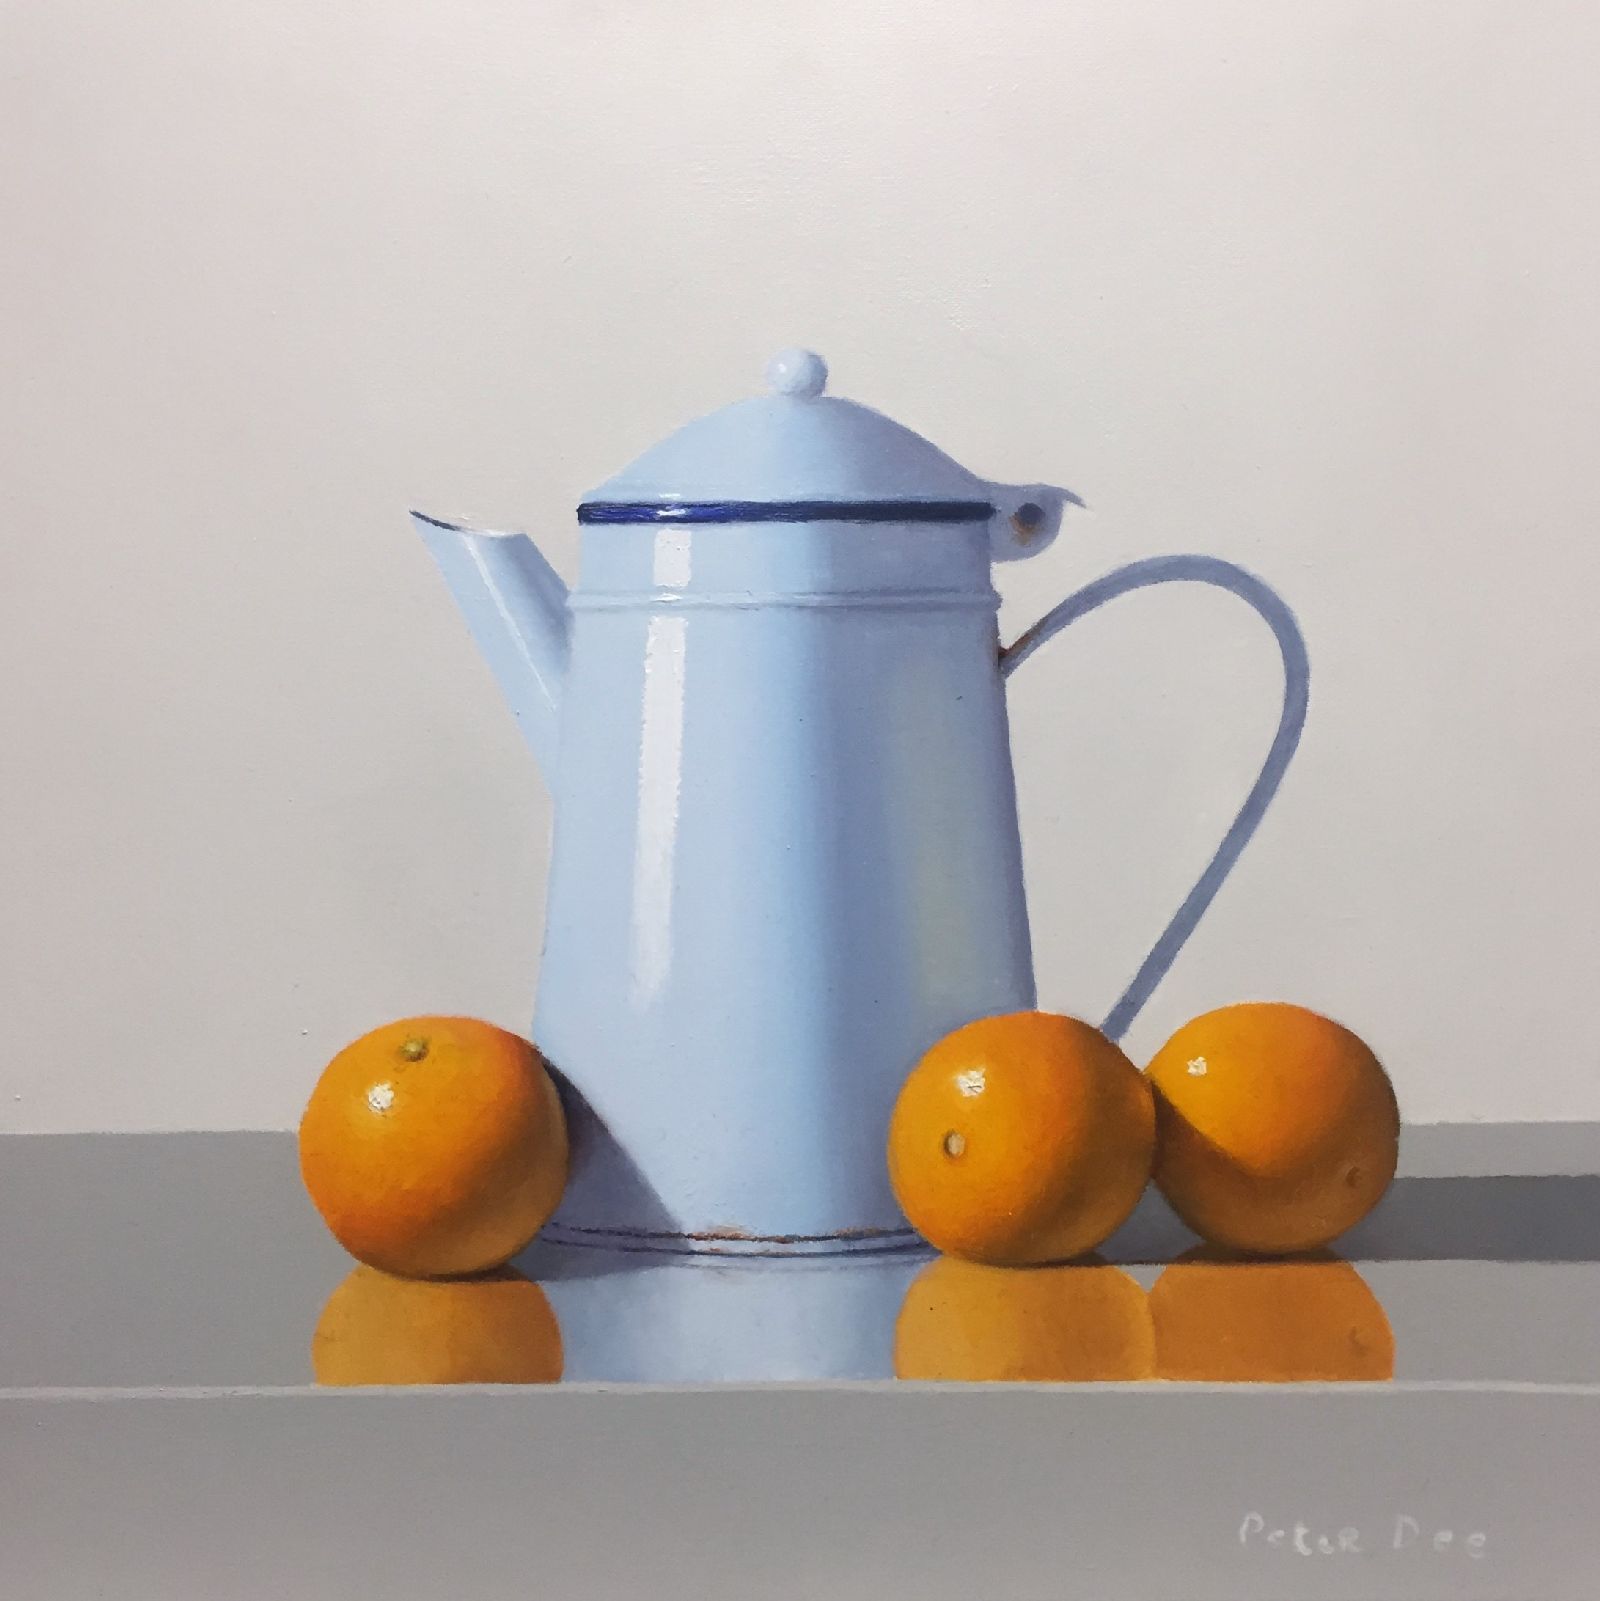 Vintage Jug with Oranges by Peter Dee